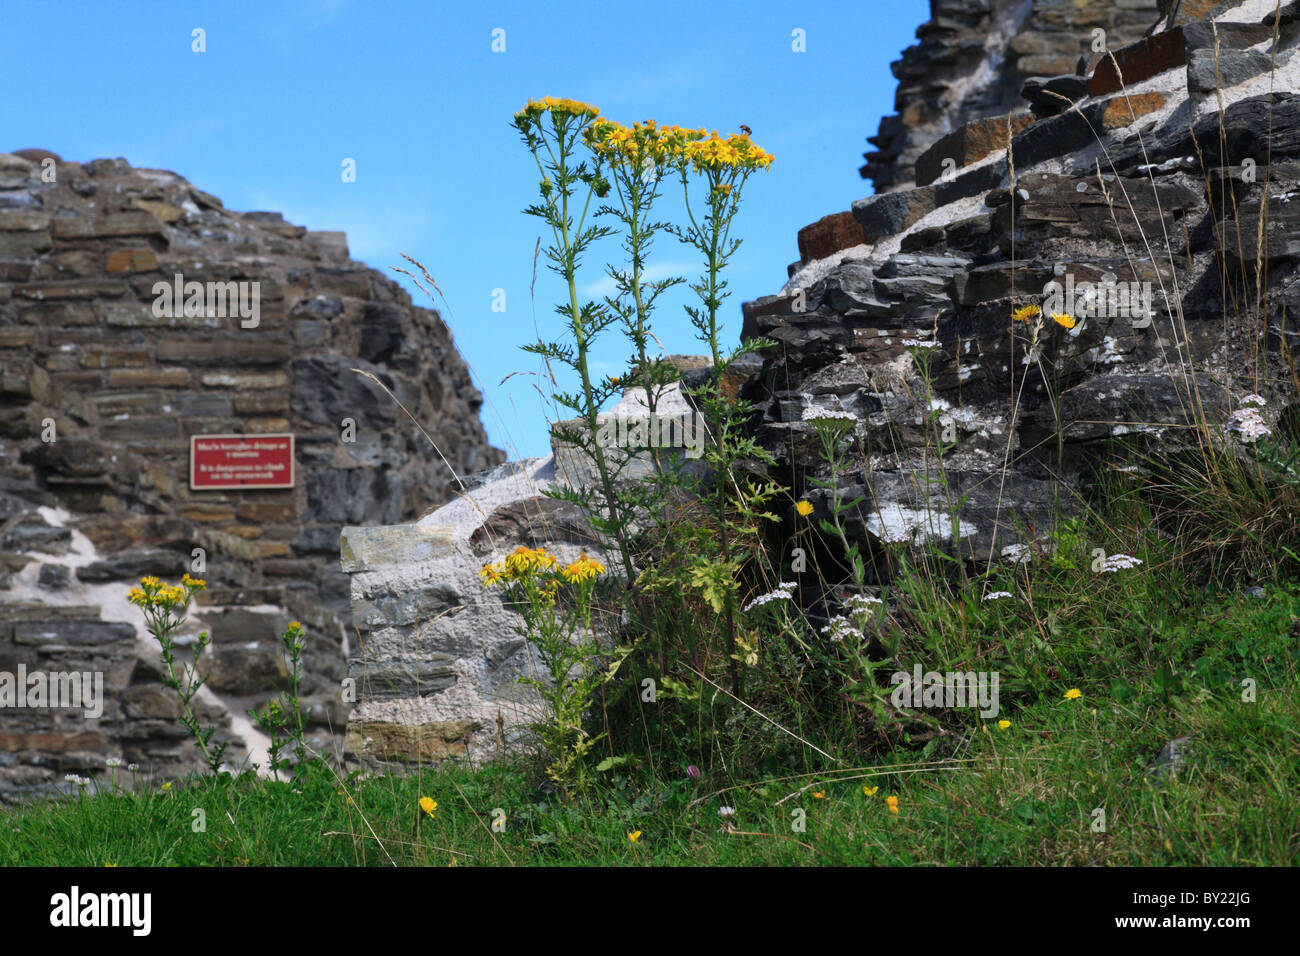 Politique Séneçon jacobée (Senecio jacobaea) de plus en plus parmi les ruines de château Dolforwyn, Powys, Pays de Galles. Banque D'Images